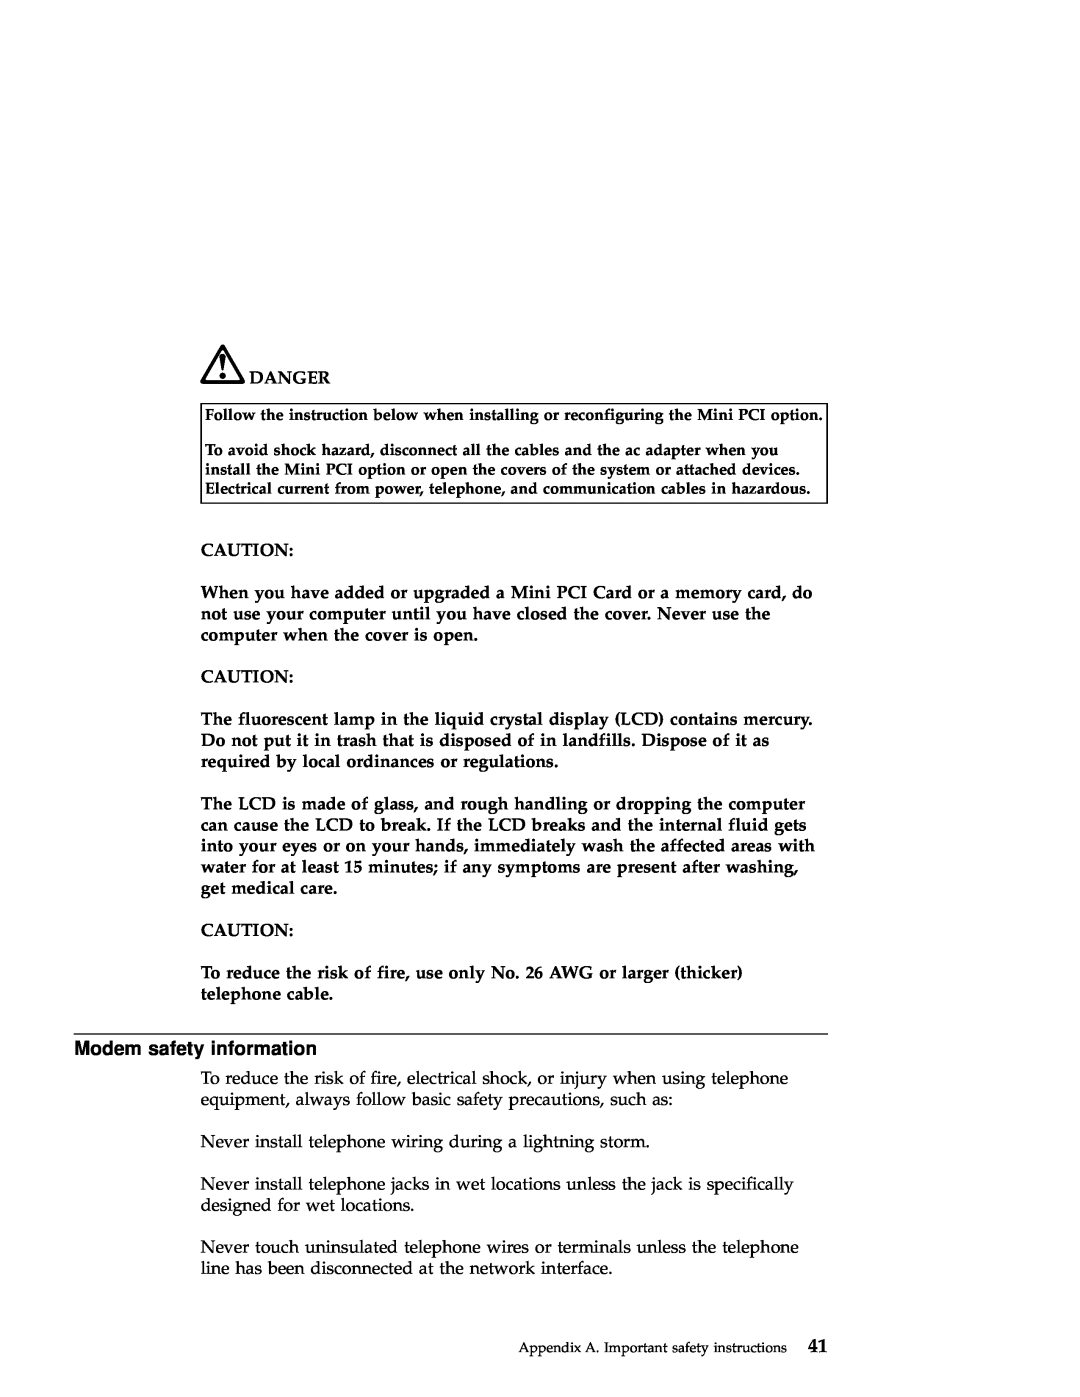 IBM A21e manual Modem safety information, Danger 